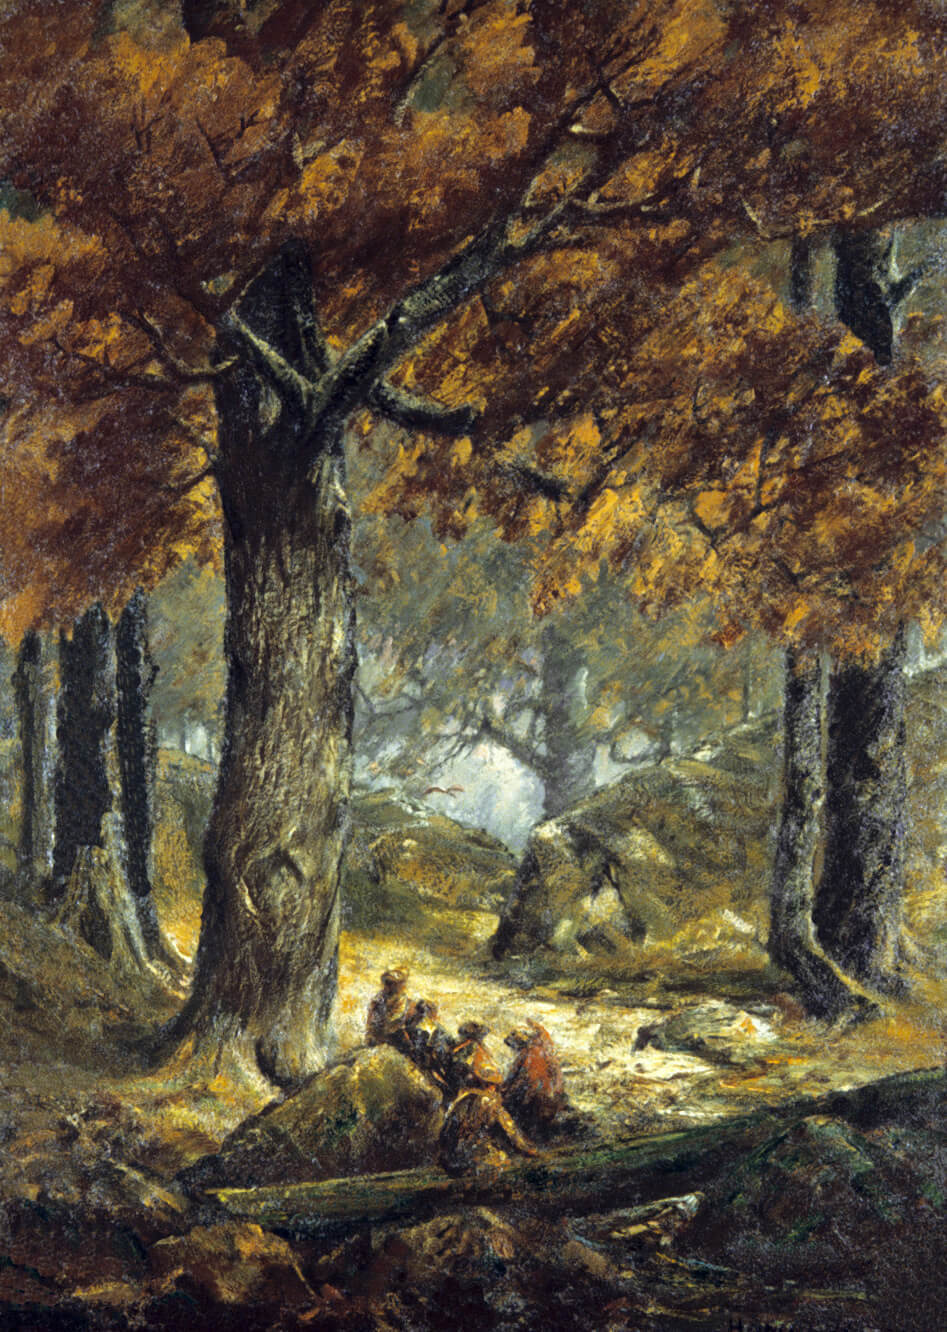 Nut Gatherers in the Forest (Cueilleurs de noix dans la forêt), 1900, par Homer Watson